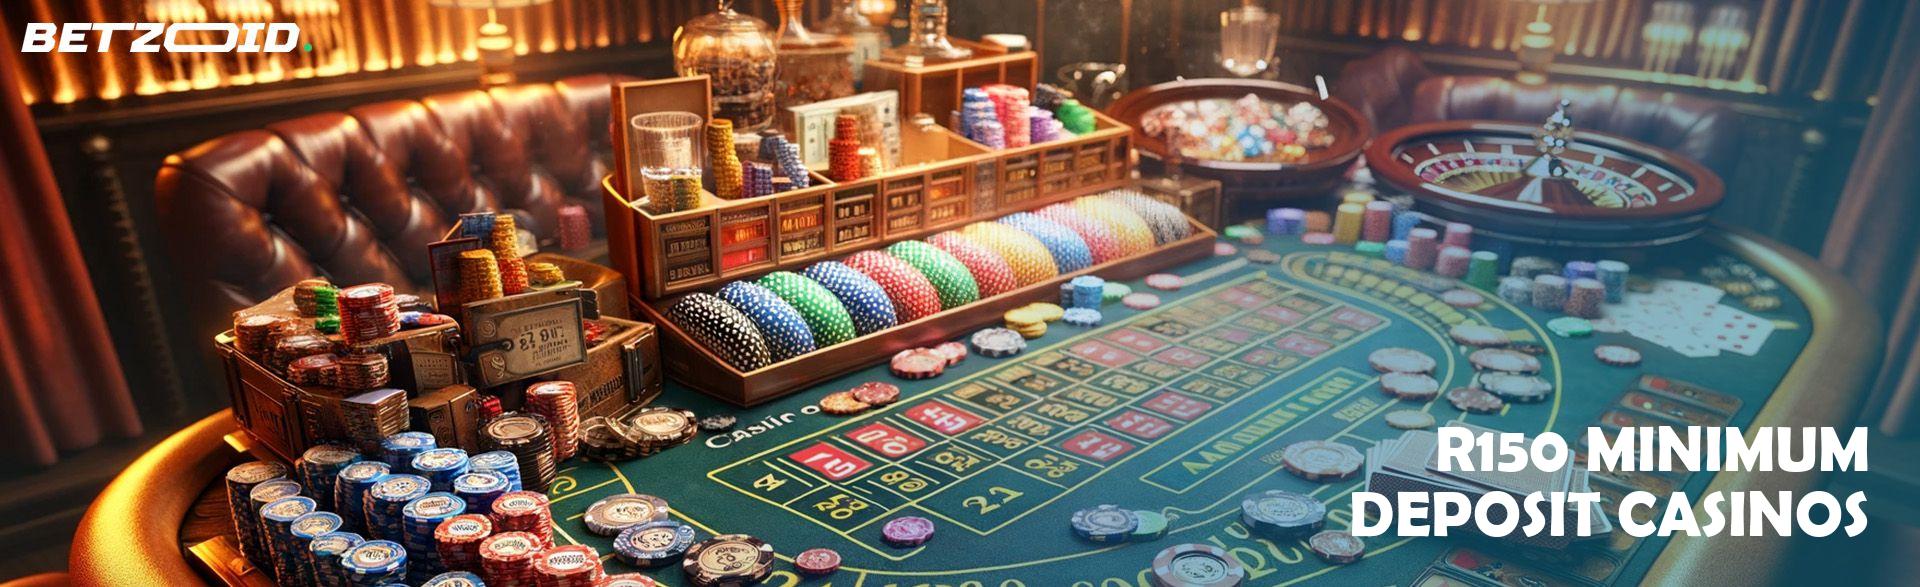 R150 Minimum Deposit Casinos.